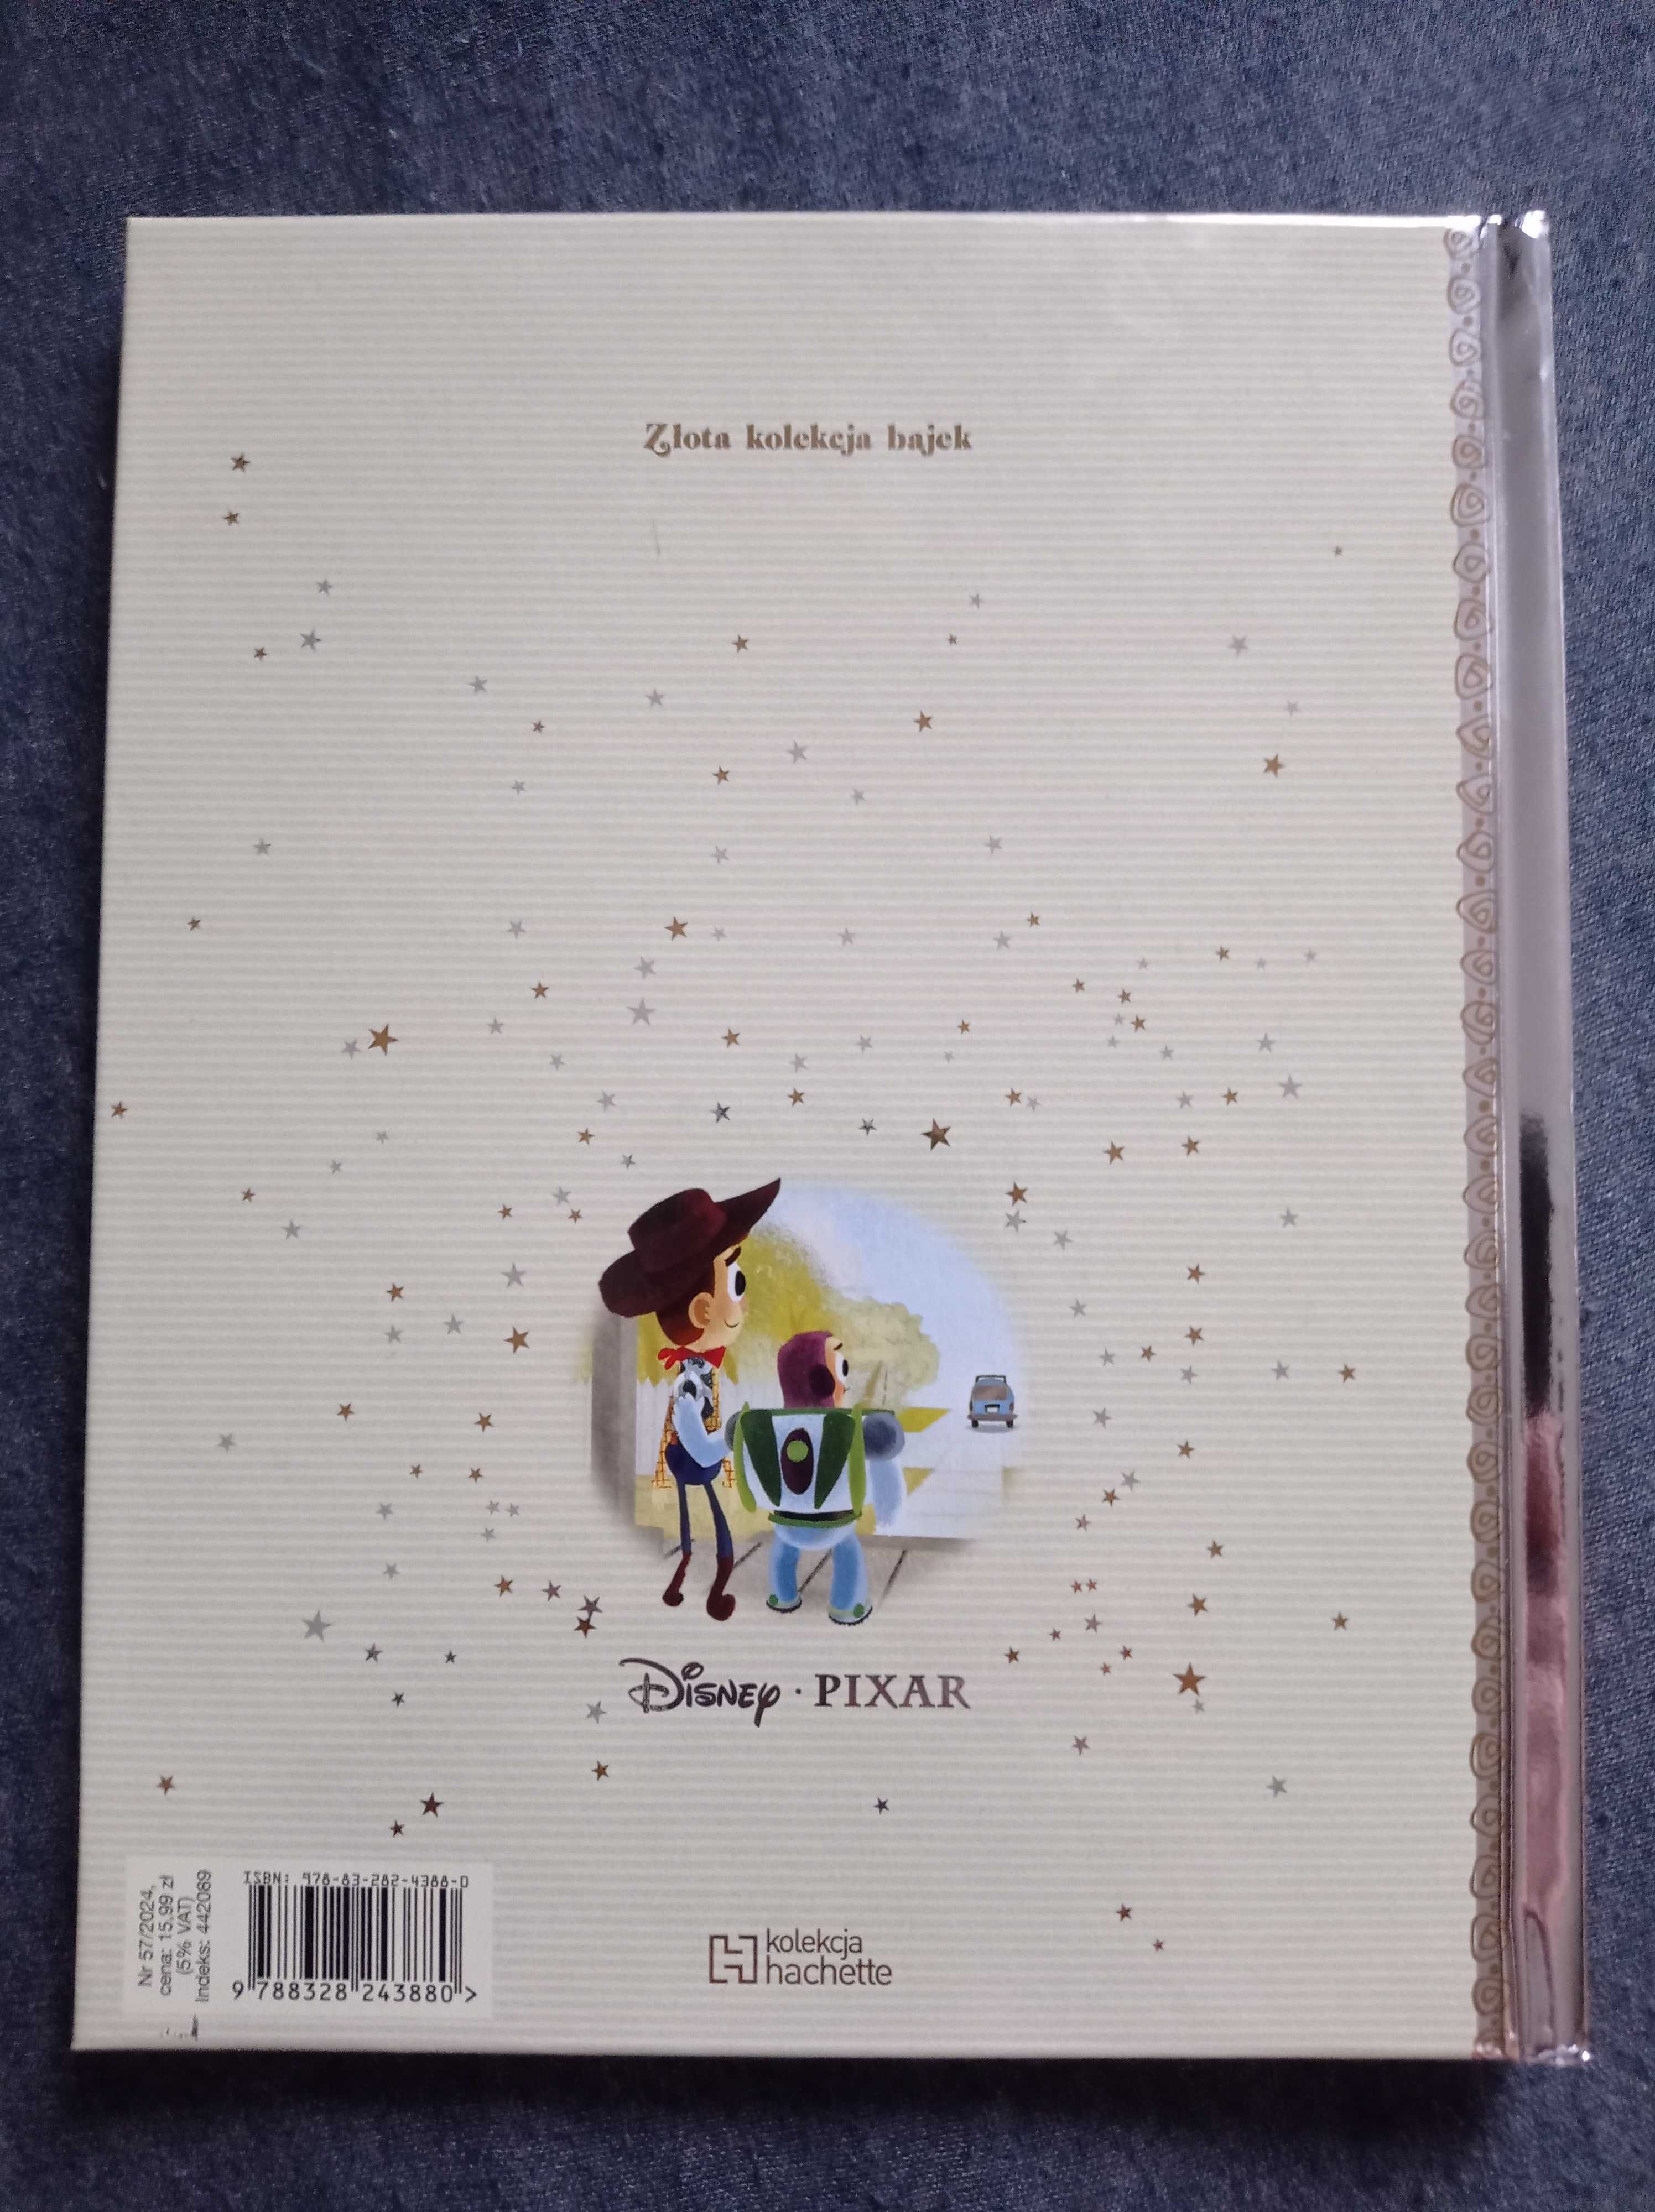 Książka toy story 3 złota kolekcja bajek Disneya